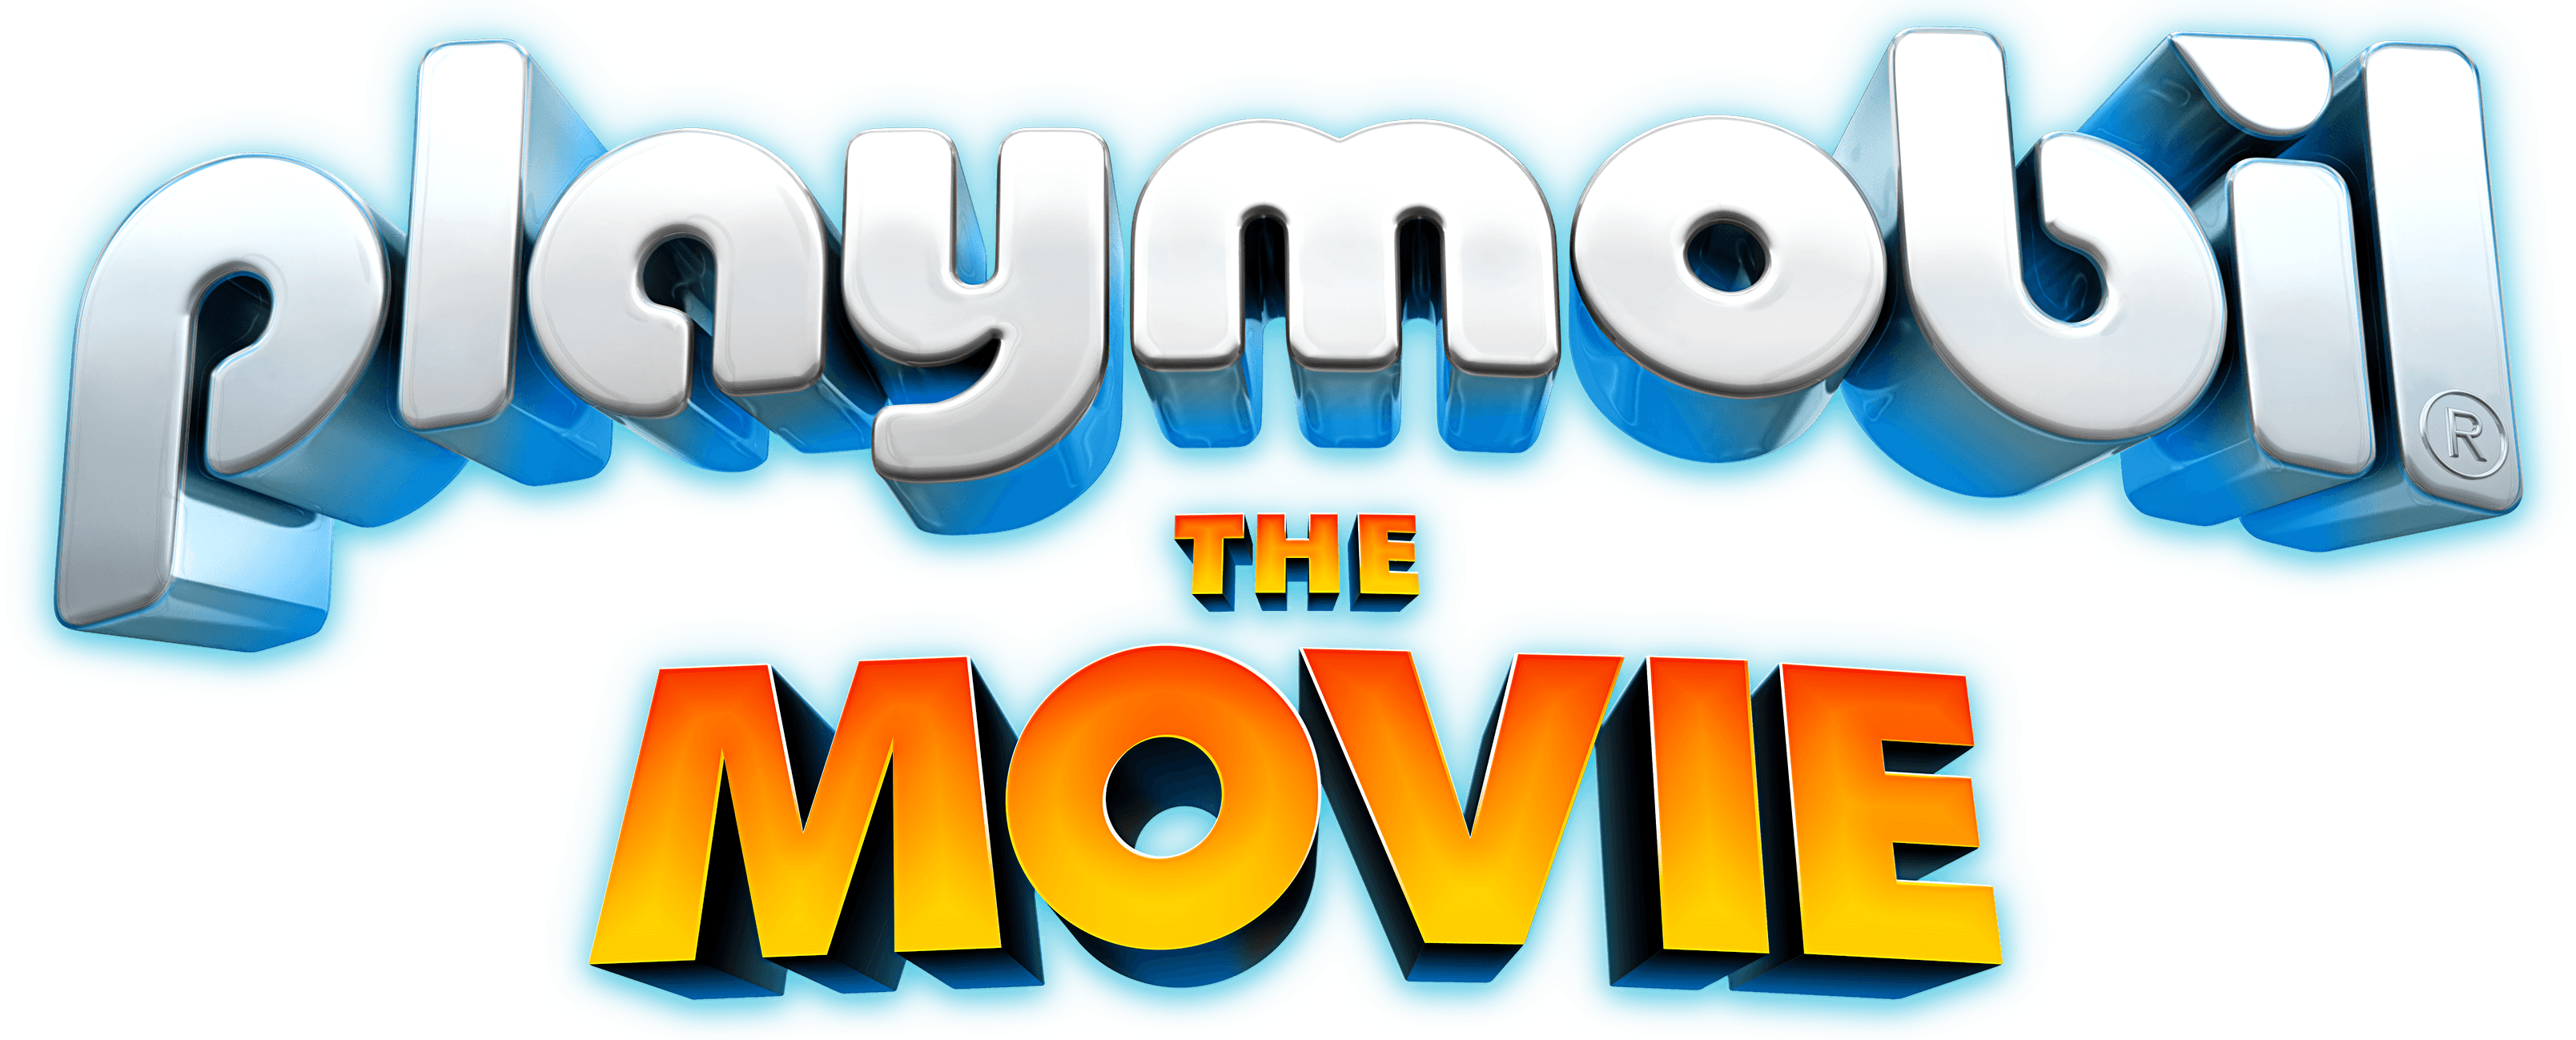 Playmobil: The Movie logo